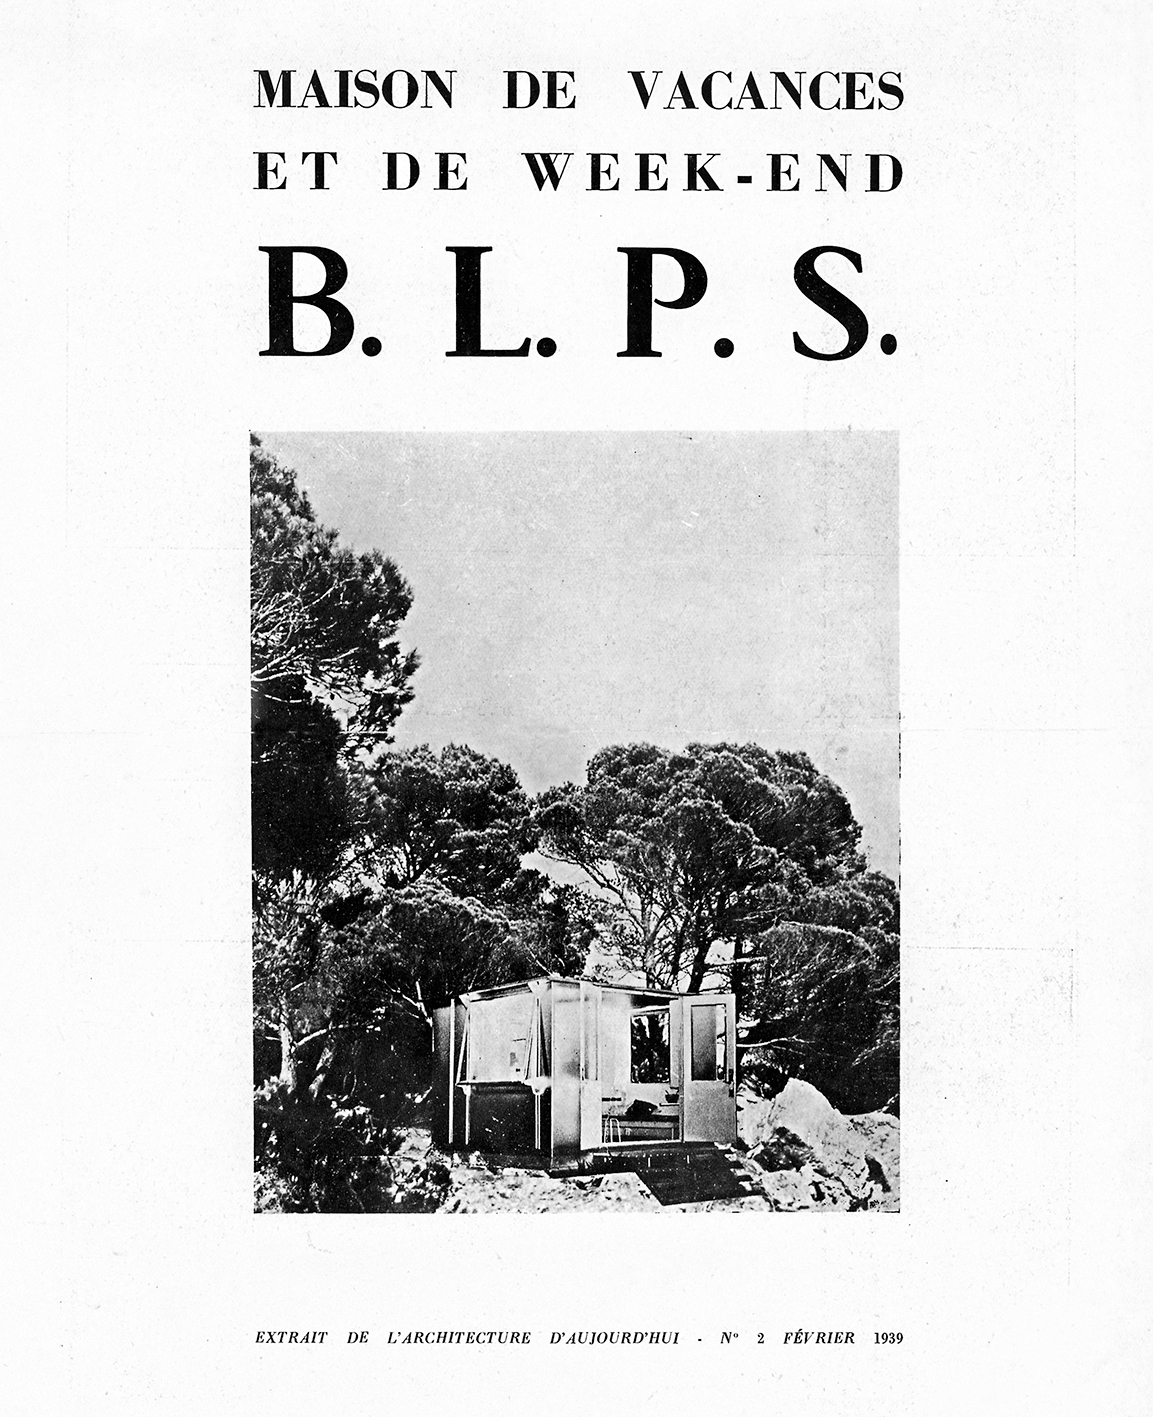 Maison de week-end démontable BLPS (E. Beaudouin et M. Lods, arch., Ateliers Jean Prouvé, concepteur, Les Forges de Strasbourg, constructeur, 1937).